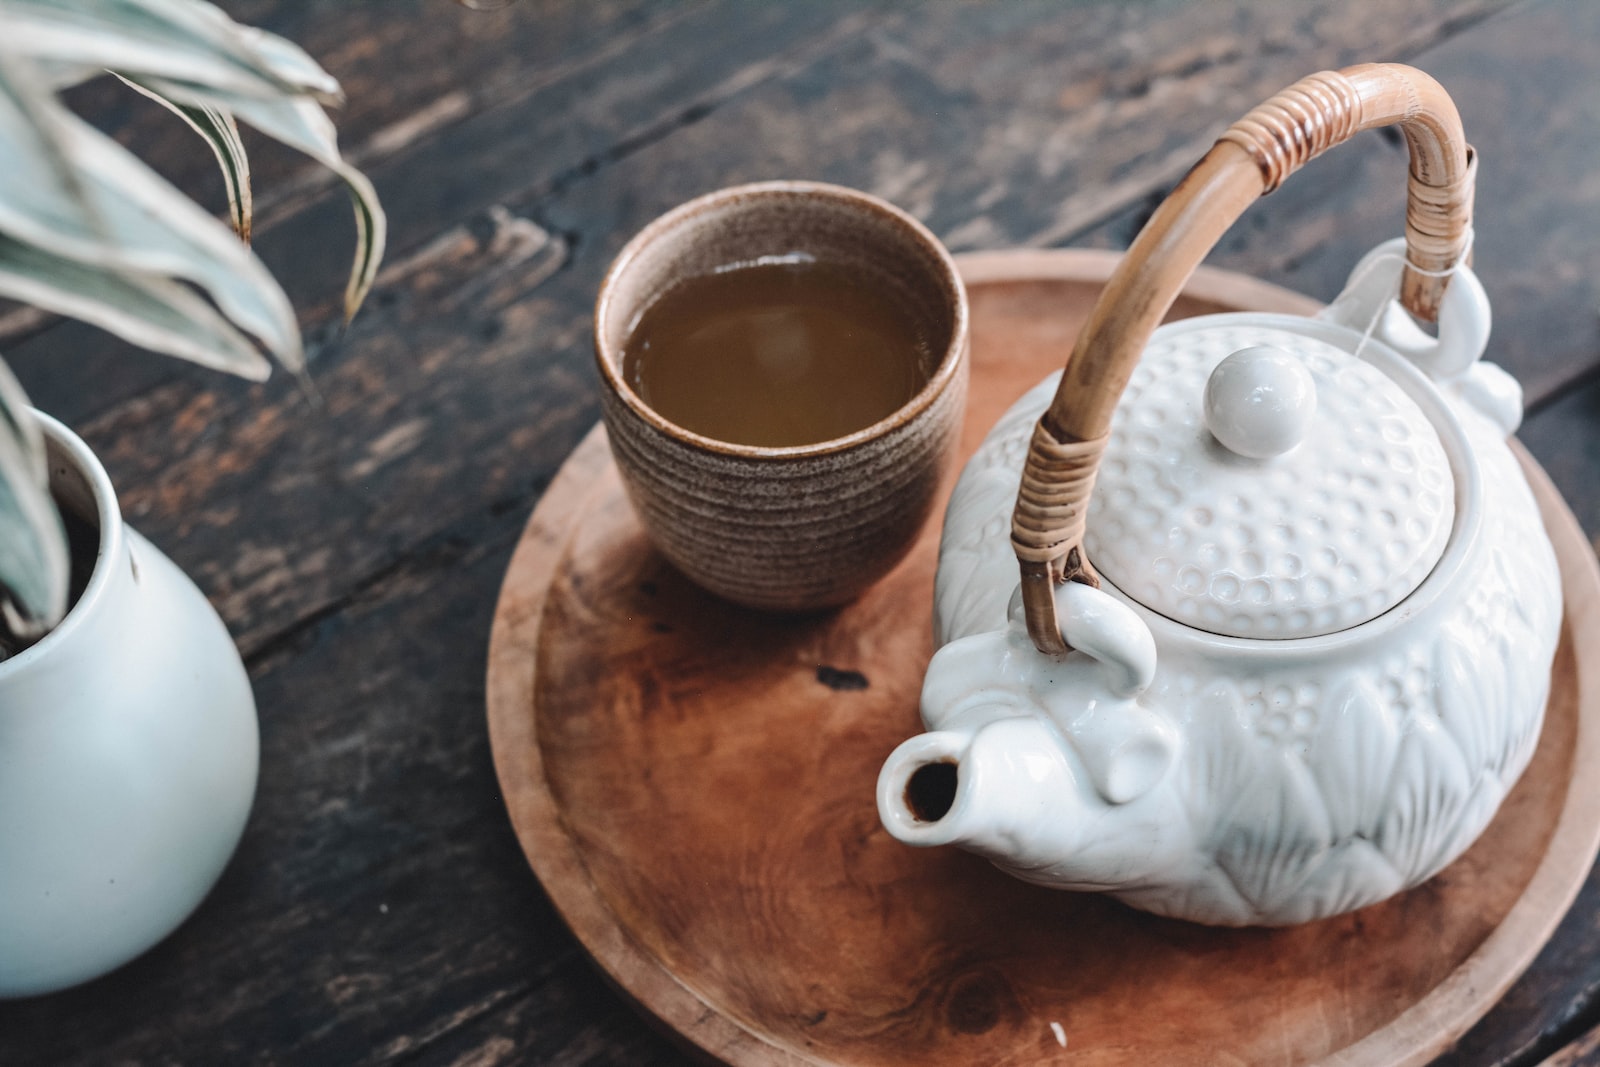 Jakie są korzyści zdrowotne picia herbaty i jakie rodzaje herbaty są najzdrowsze?